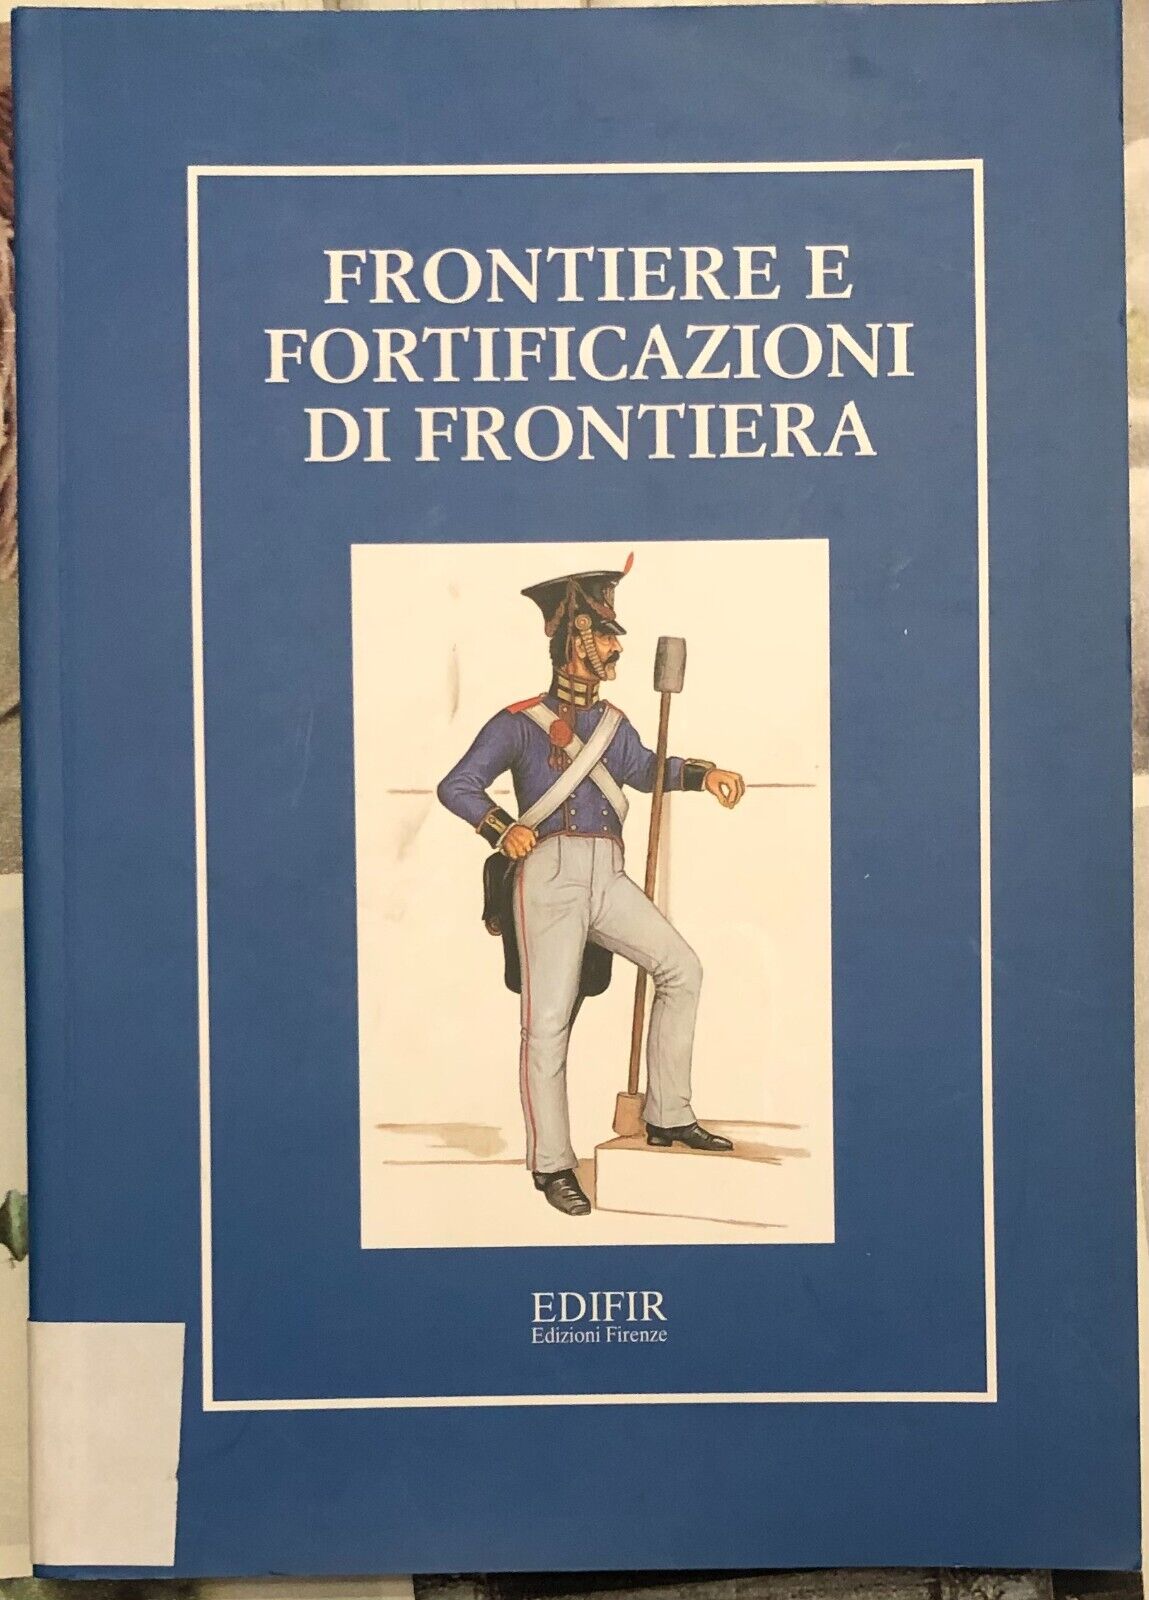 Frontiere e fortificazioni di frontiera di Carla Sodini, 2001, Edifir